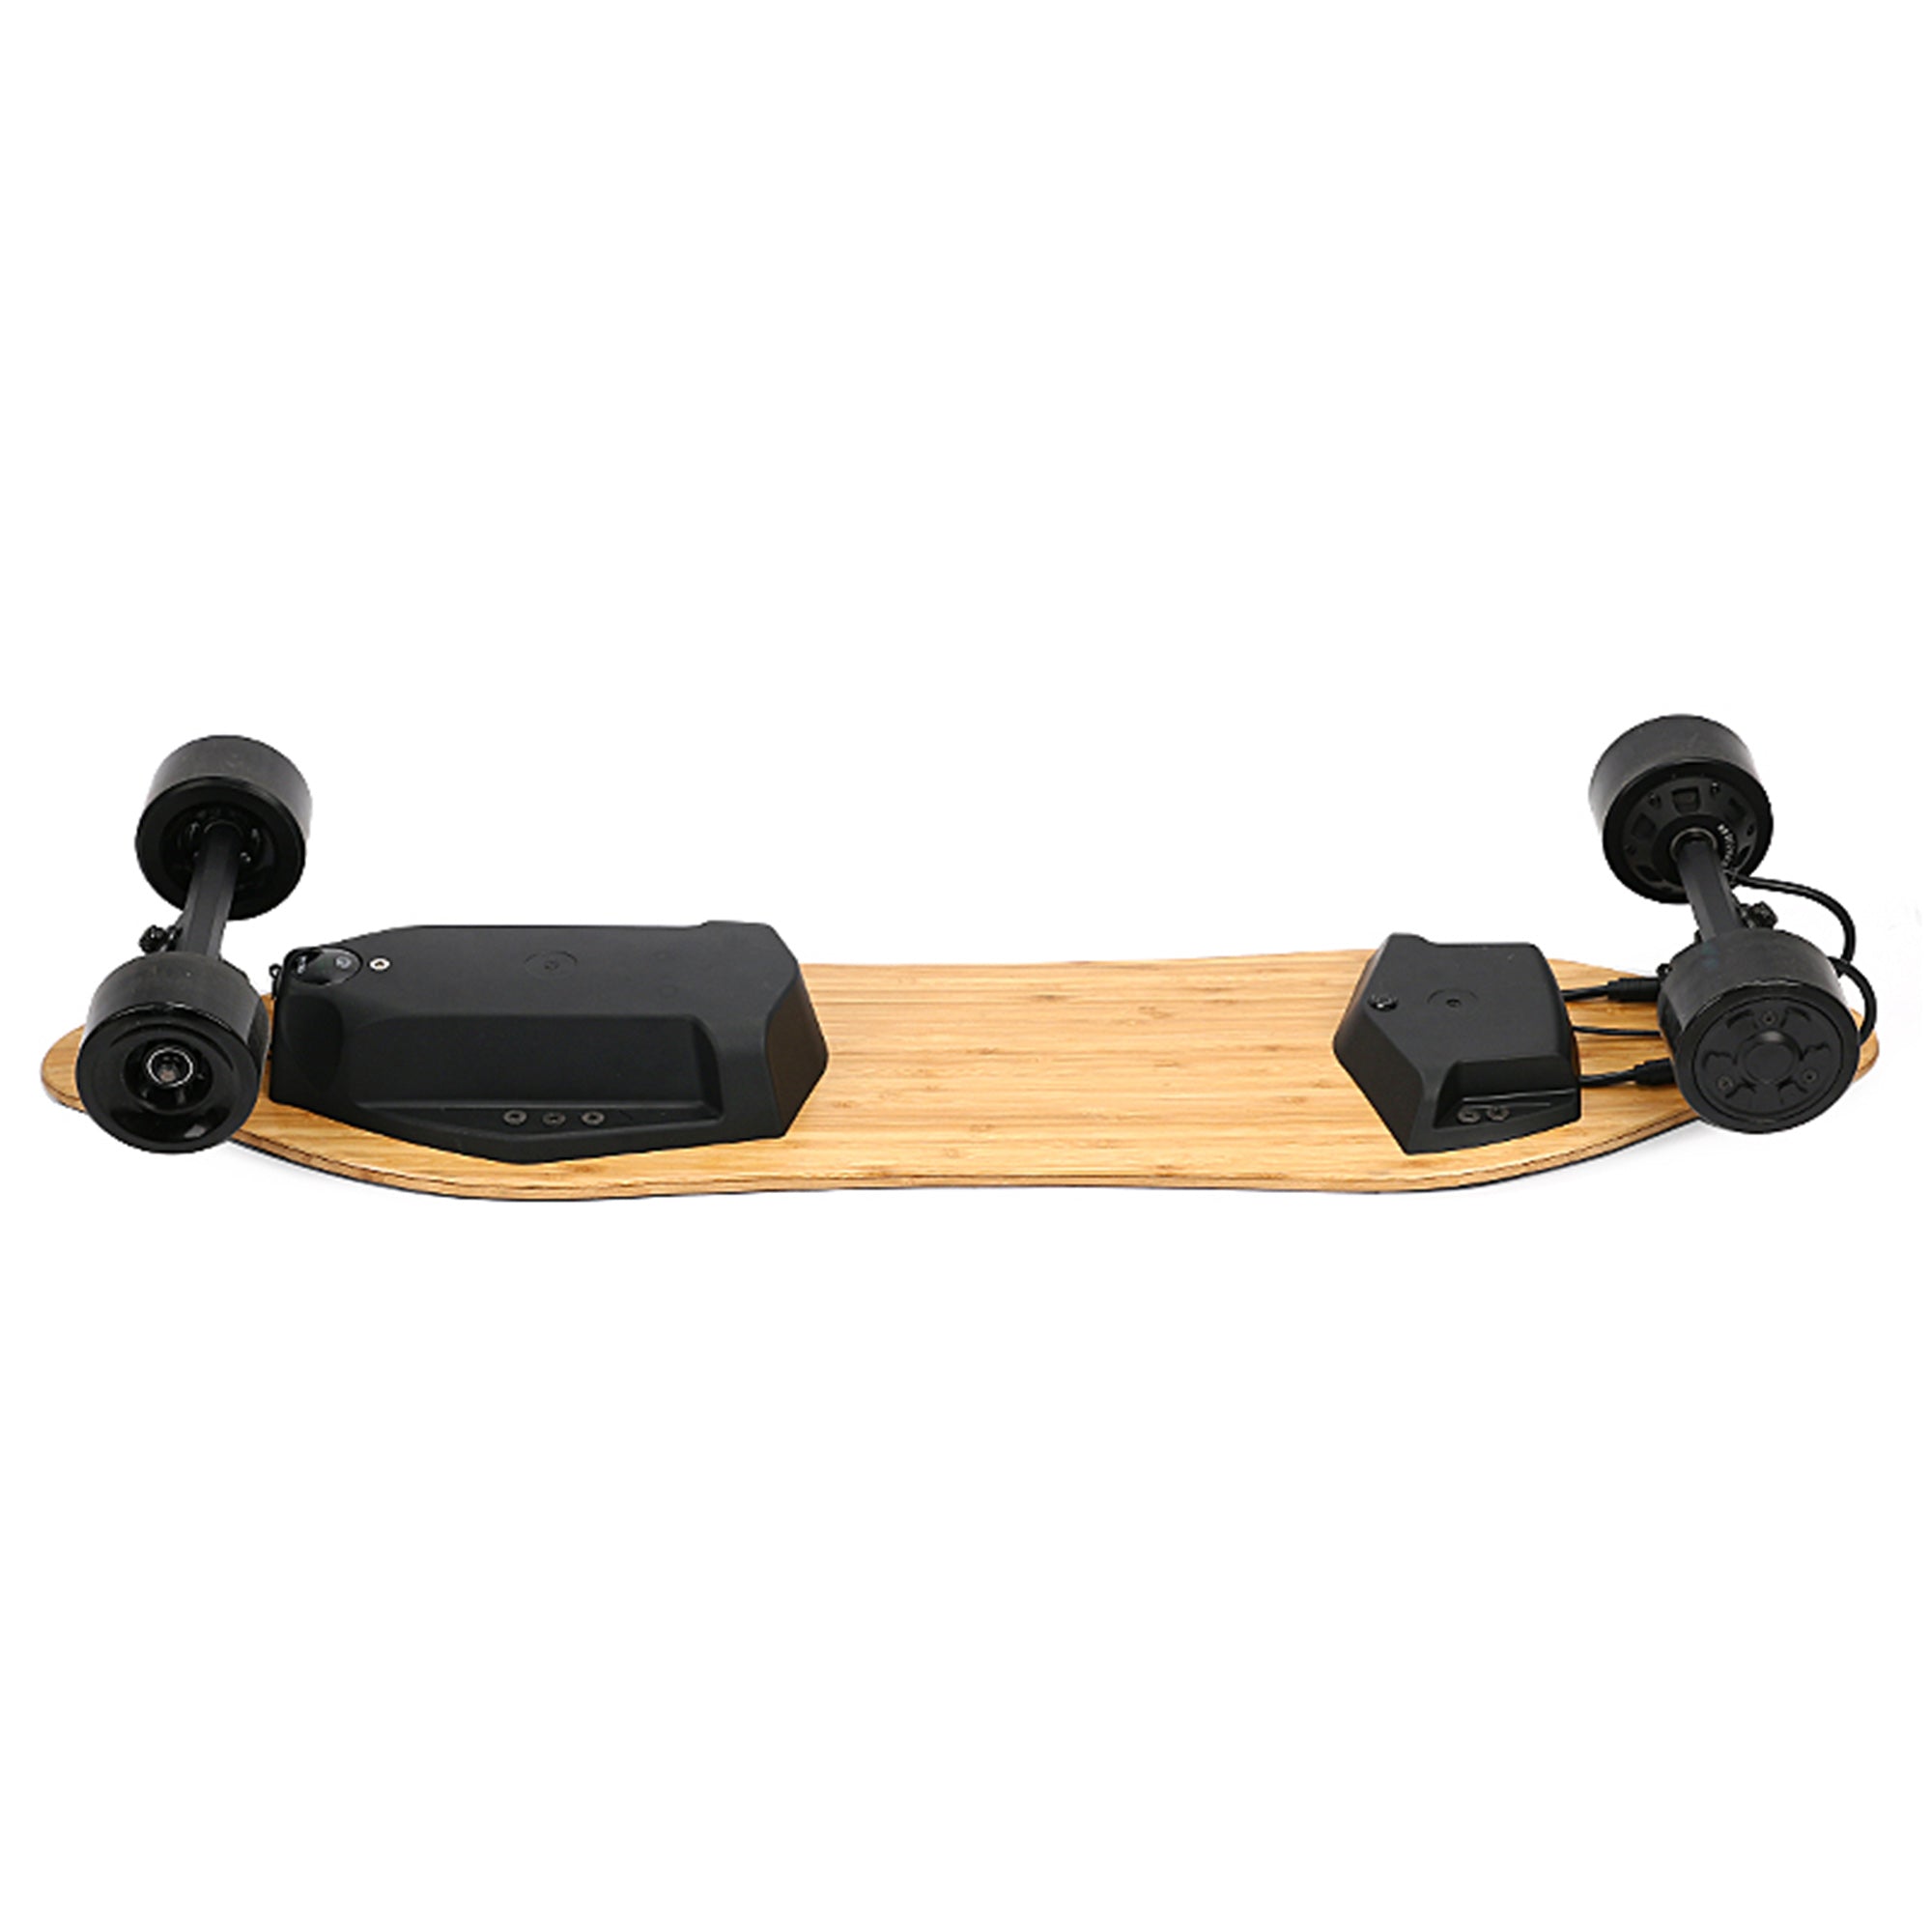 Skateboard électrique Switcher HP v2 - 11,6 Ah/ 14 Ah – PIE TECHNOLOGIE